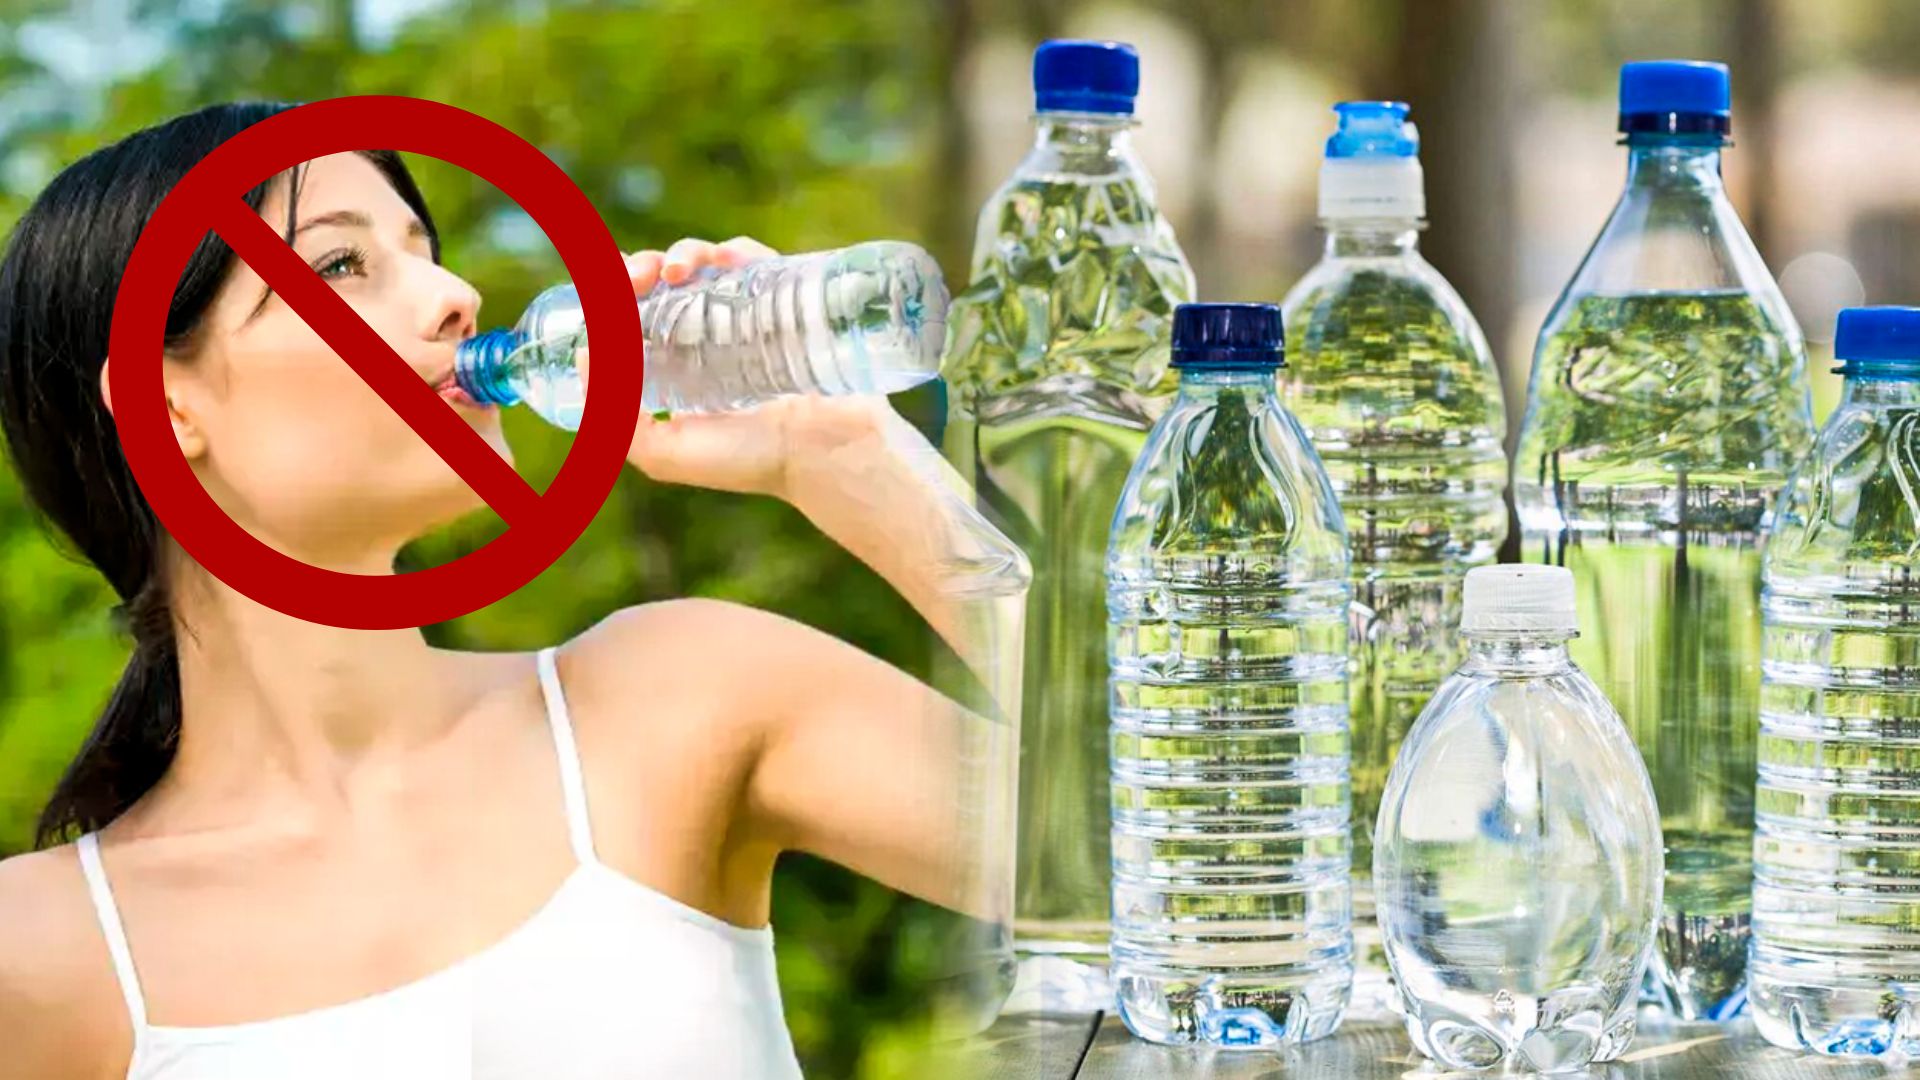 Cada vez más fabricantes incluyen en sus botellas la advertencia "No reutilizar". Foto: composición LR/Hogarmanía